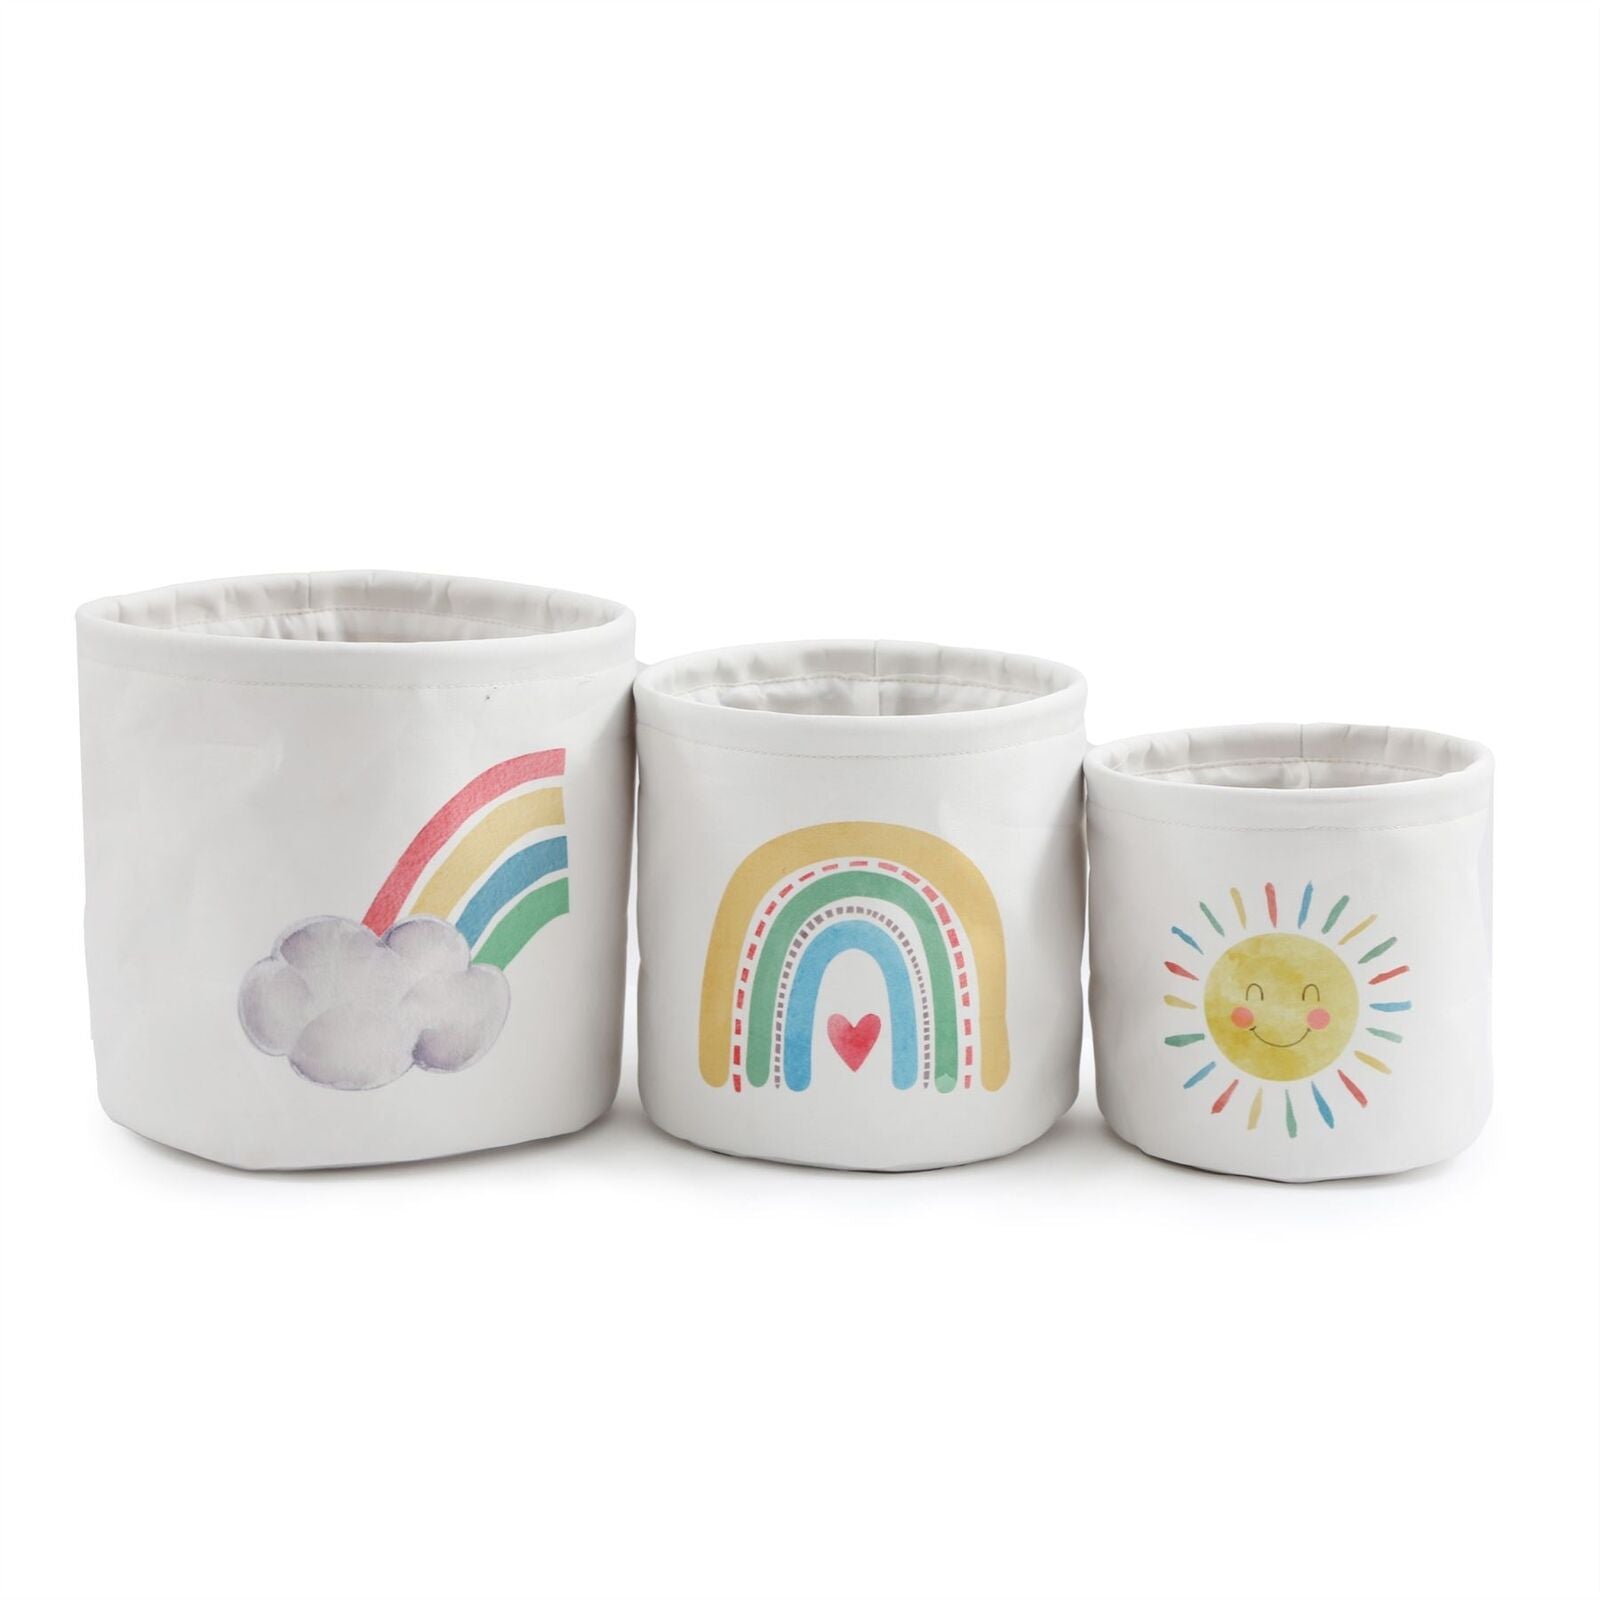 3 fabric nursery storage baskets with rainbow motifs